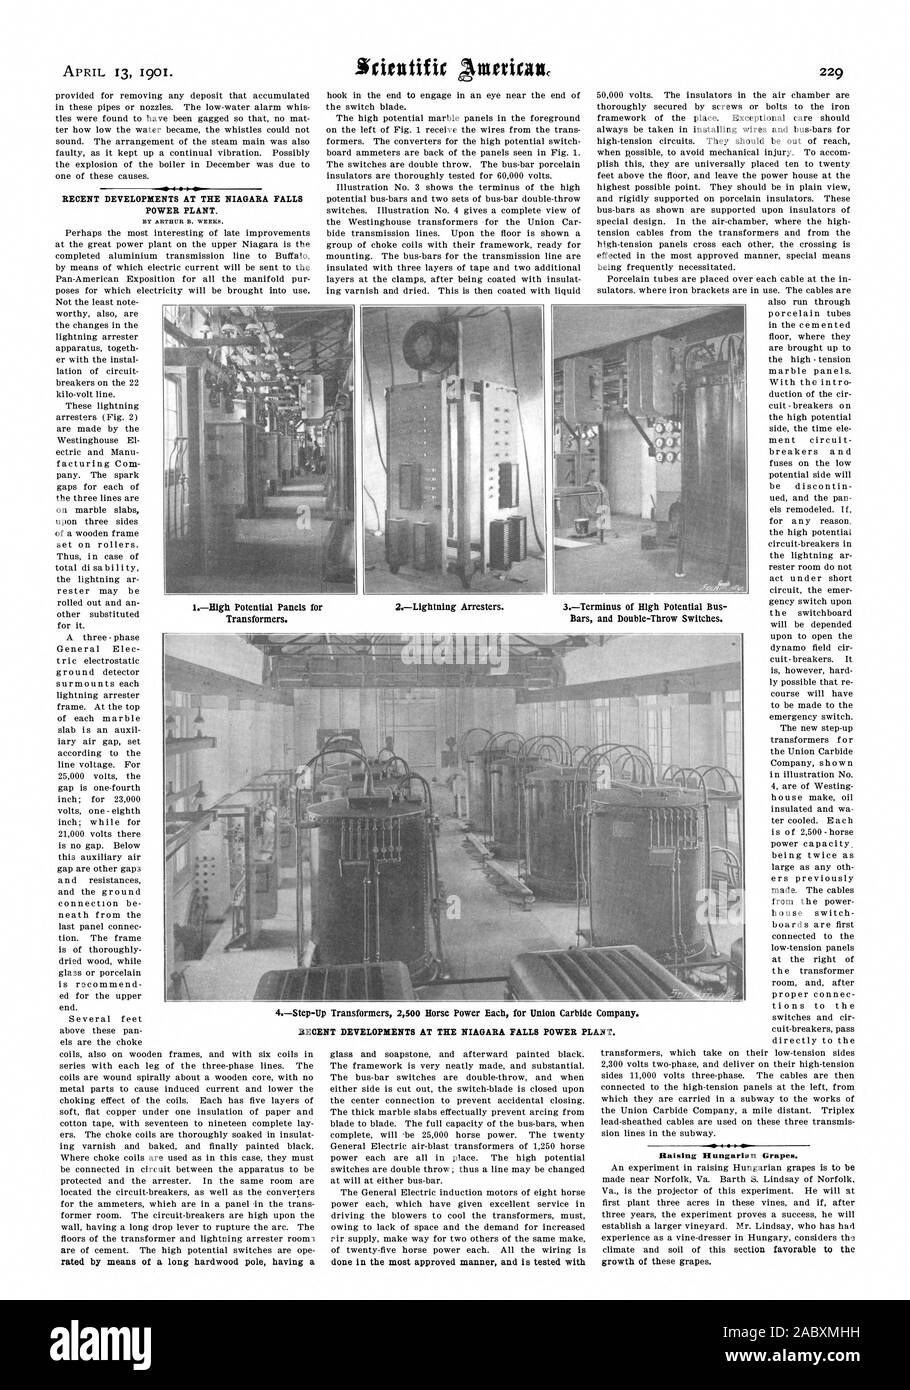 Les récents développements À LA NIAGARA FALLS POWER PL ANT. Sensibiliser les raisins hongrois. IHigh Panneaux potentiel pour les transformateurs. 2Des parafoudres. Bars et Double-Throw commutateurs. Les transformateurs élévateurs 42500 chevaux chacun pour Union Carbide Company. Les récents développements À LA NIAGARA FALLS POWER PLANT., Scientific American, 1901-1904-13 Banque D'Images